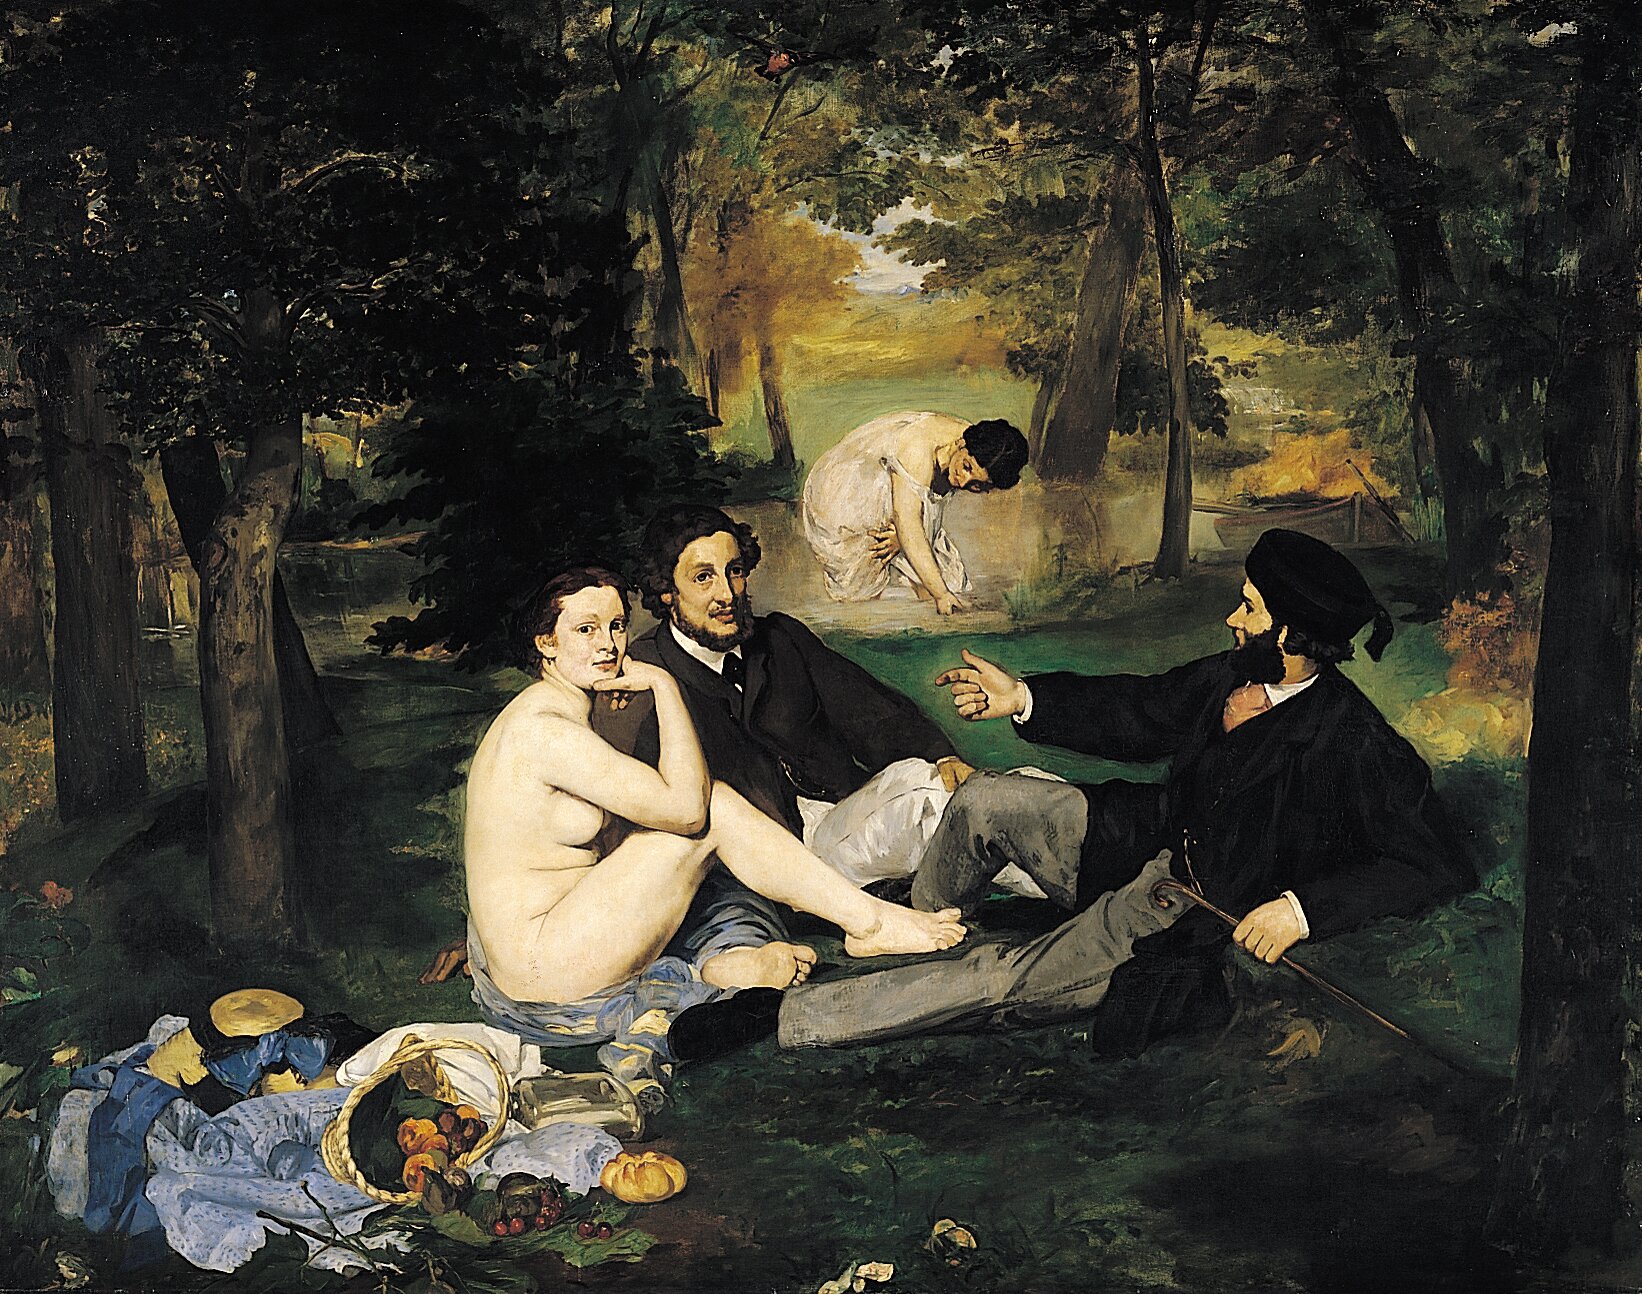 Ilustracja przedstawia obraz. Na kocu na trawie siedzi dwóch mężczyzn w czarnych płaszczach i ciemnych włosach oraz naga kobieta. Podpiera ona brodę ręką opierając ją o zgięte kolano. Przed nimi leży rozrzucone śniadanie. W tle mężczyzna klęczy na kolanach i szuka czegoś w trawie. Wokół są drzewa.